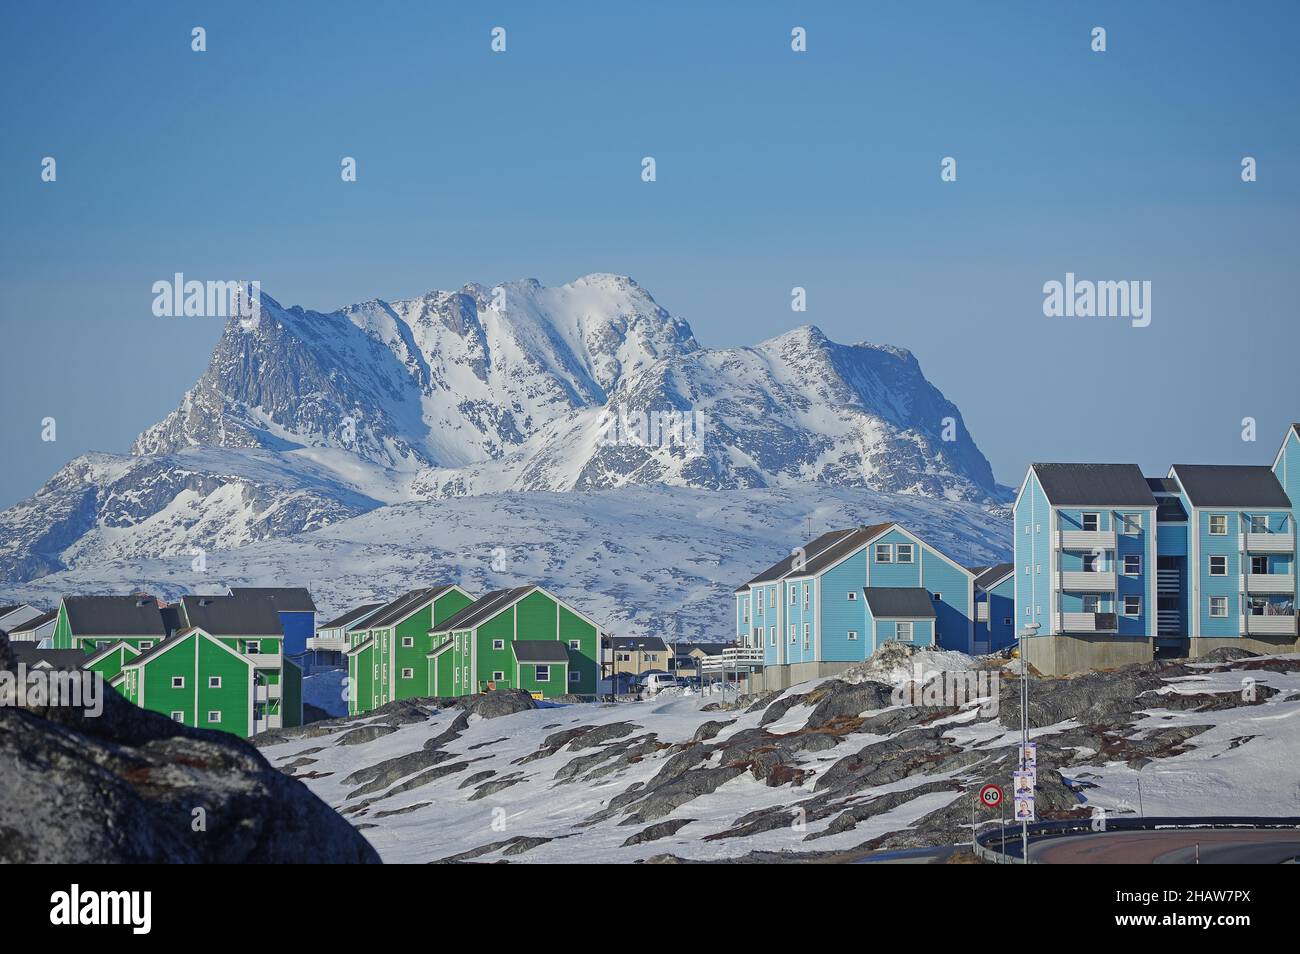 Habitations et paysage de montagne enneigé et accidenté, capitale, Nuuk, Arctique, Amérique du Nord,Groenland, Danemark Banque D'Images